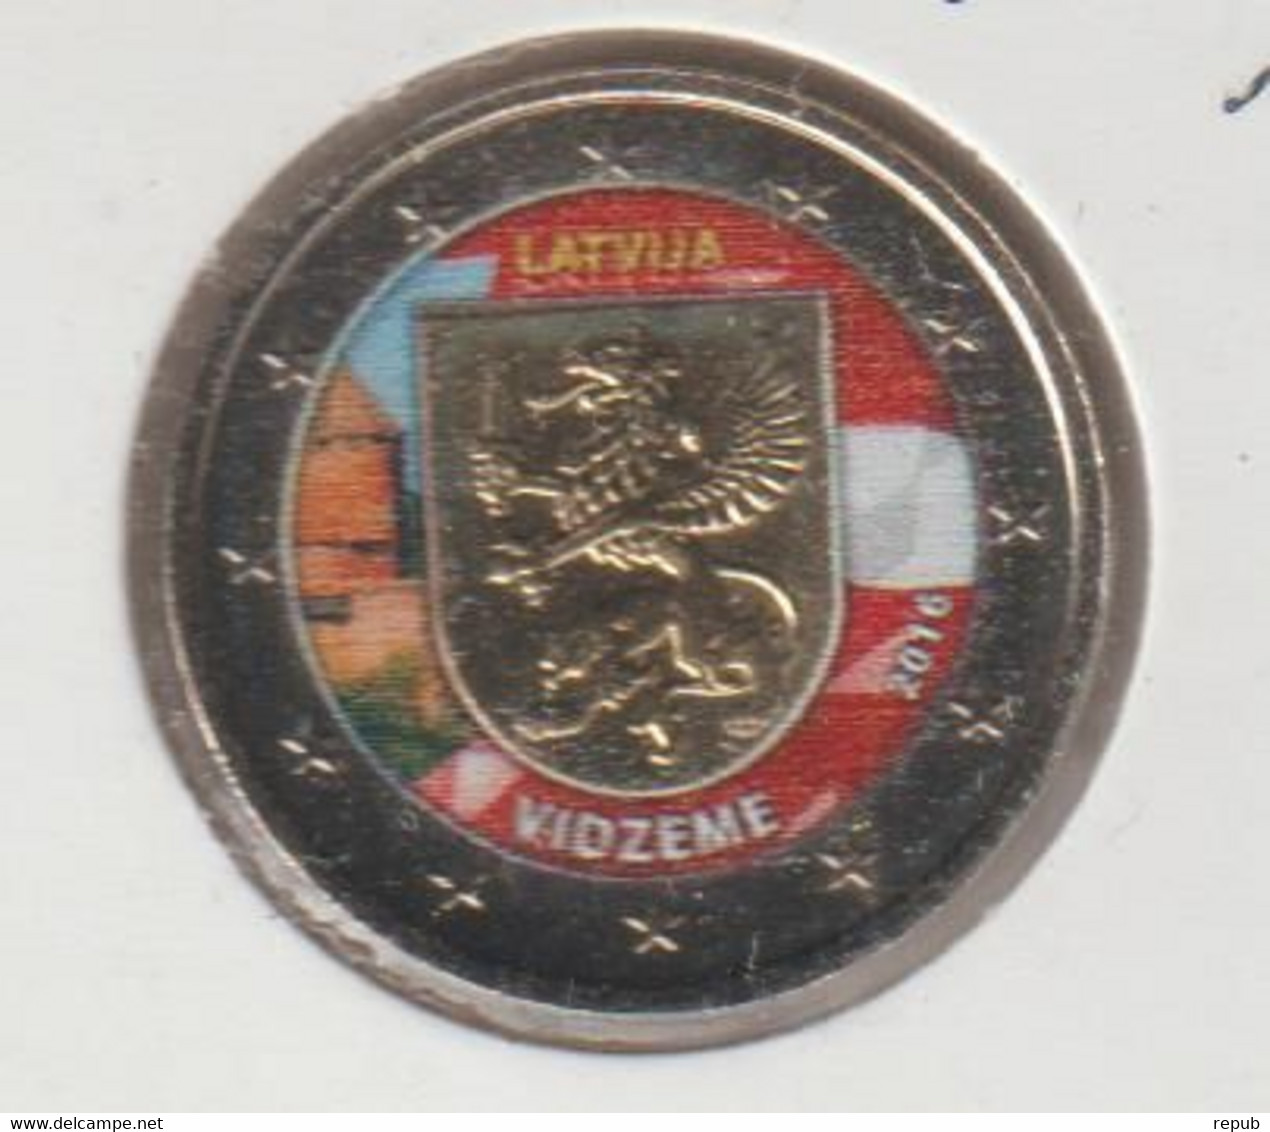 Lettonie 2016 2 Euro Vidzeme Colorisée - Latvia